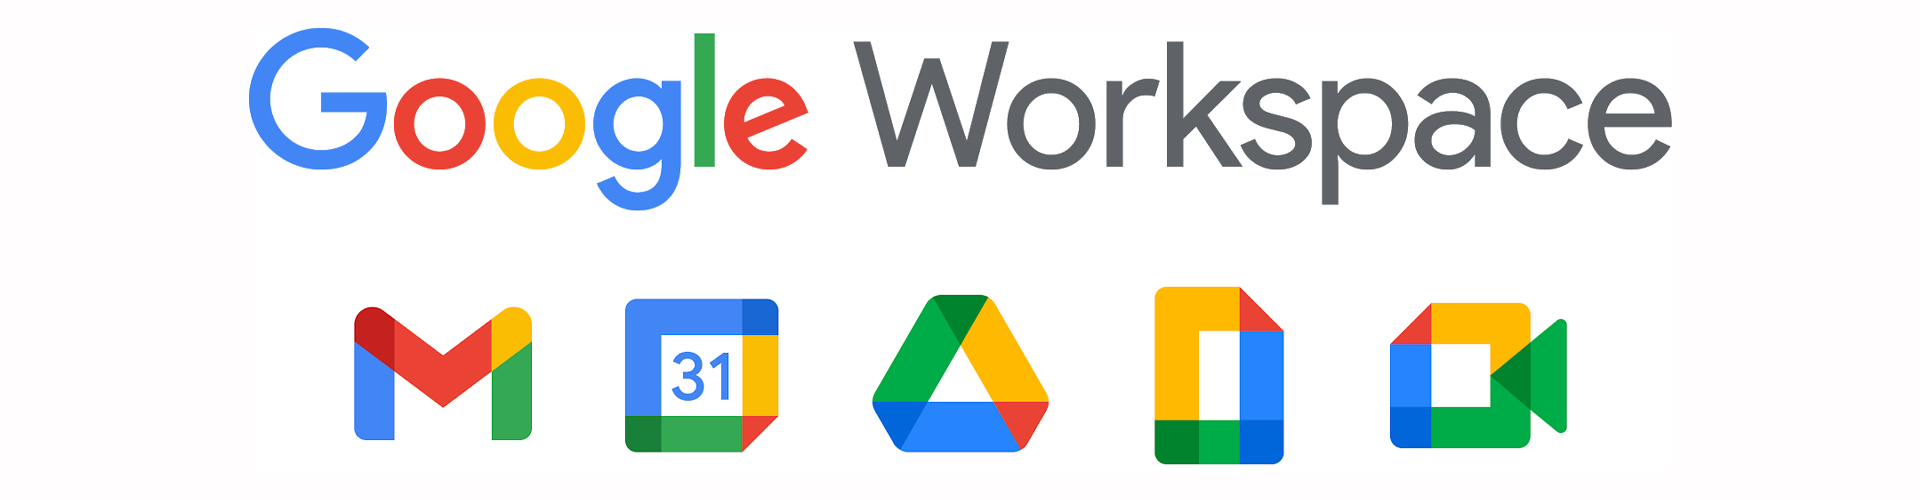 Top 5 ứng dụng thông minh của Google workspace mà bạn không thể bỏ qua